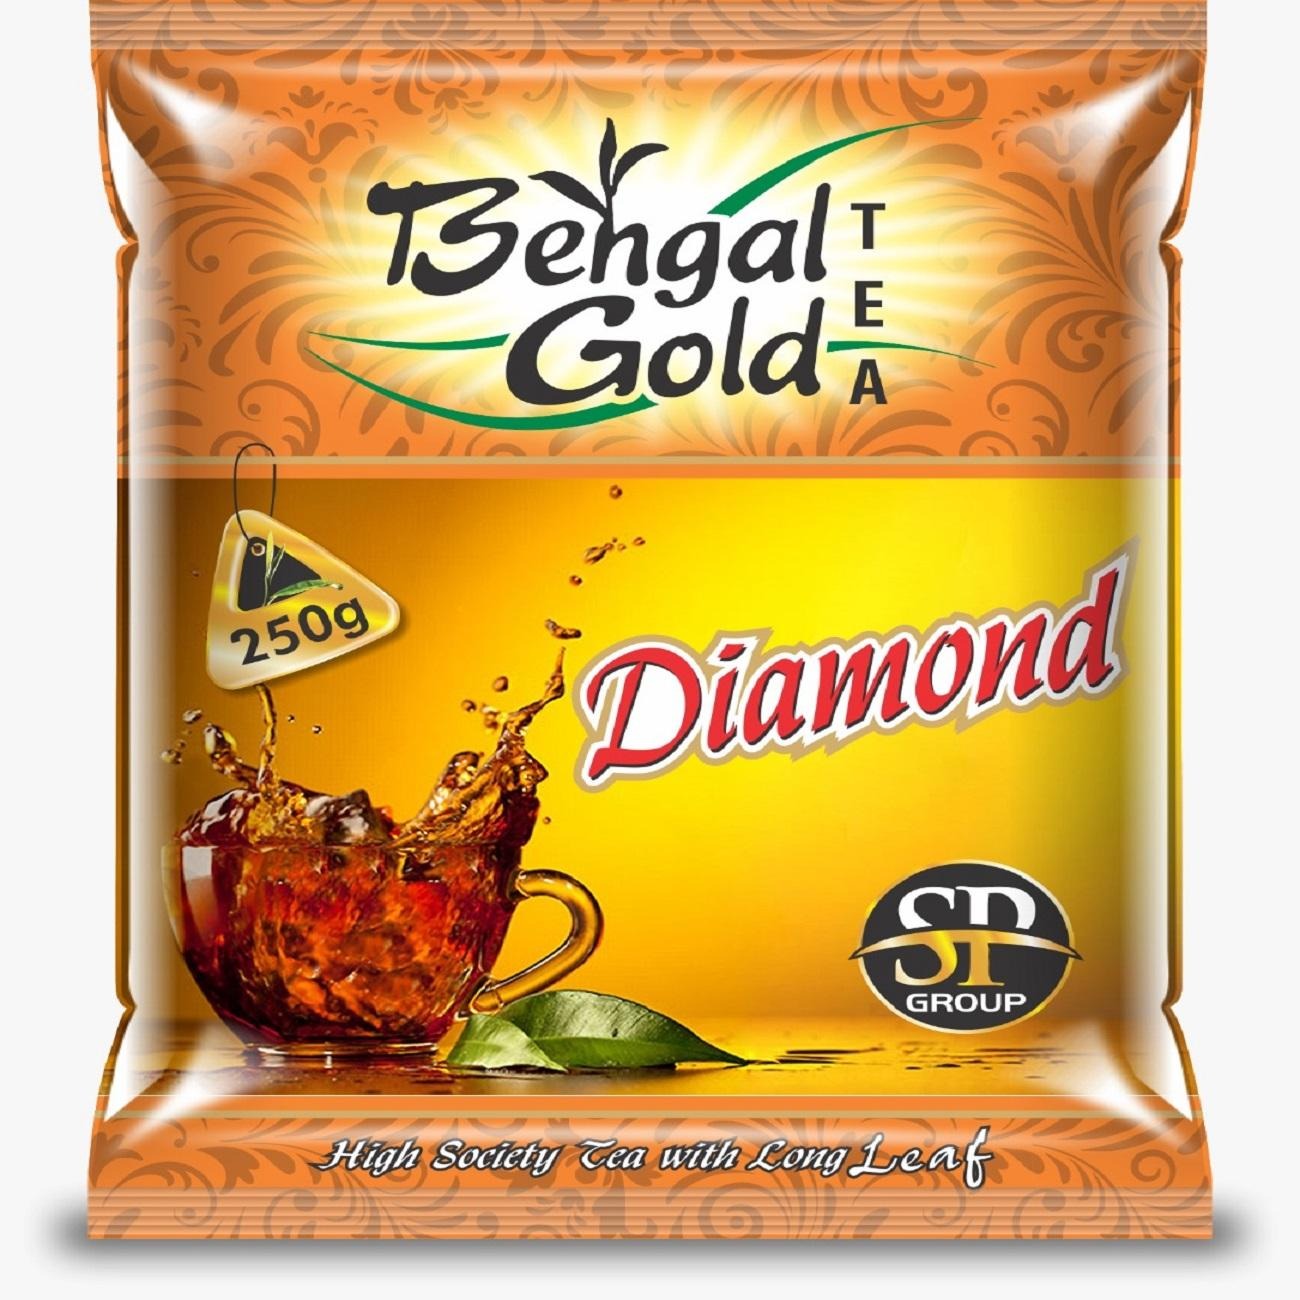 Bengal Gold Diamond Tea